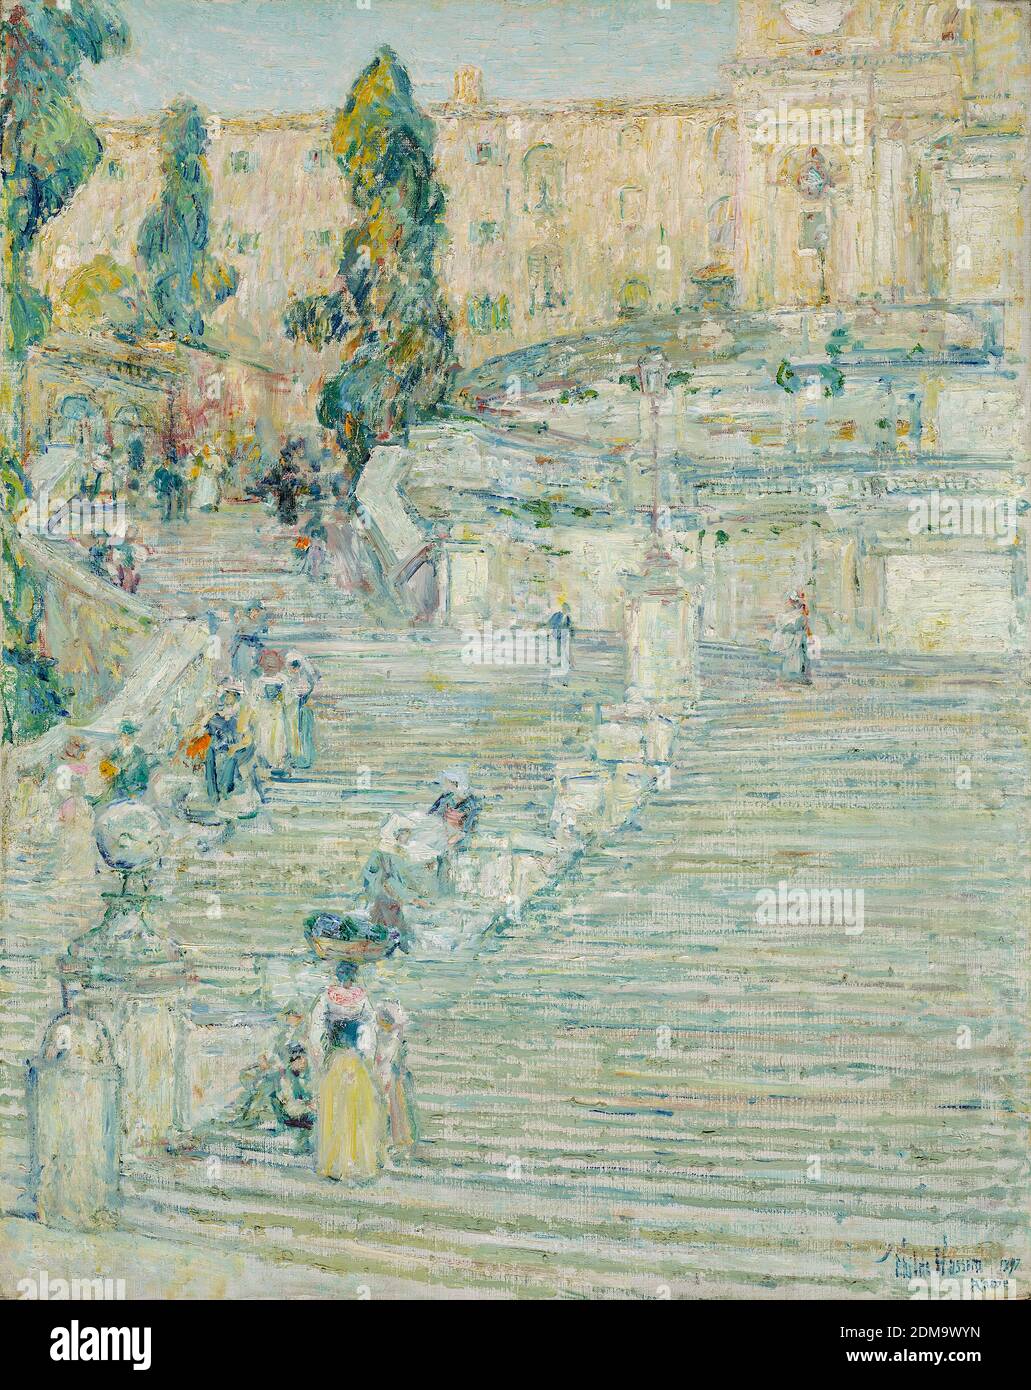 La Scala Spagnola, Roma 1897 American Impressionist Painting by Childe Hassam - altissima risoluzione e qualità dell'immagine Foto Stock